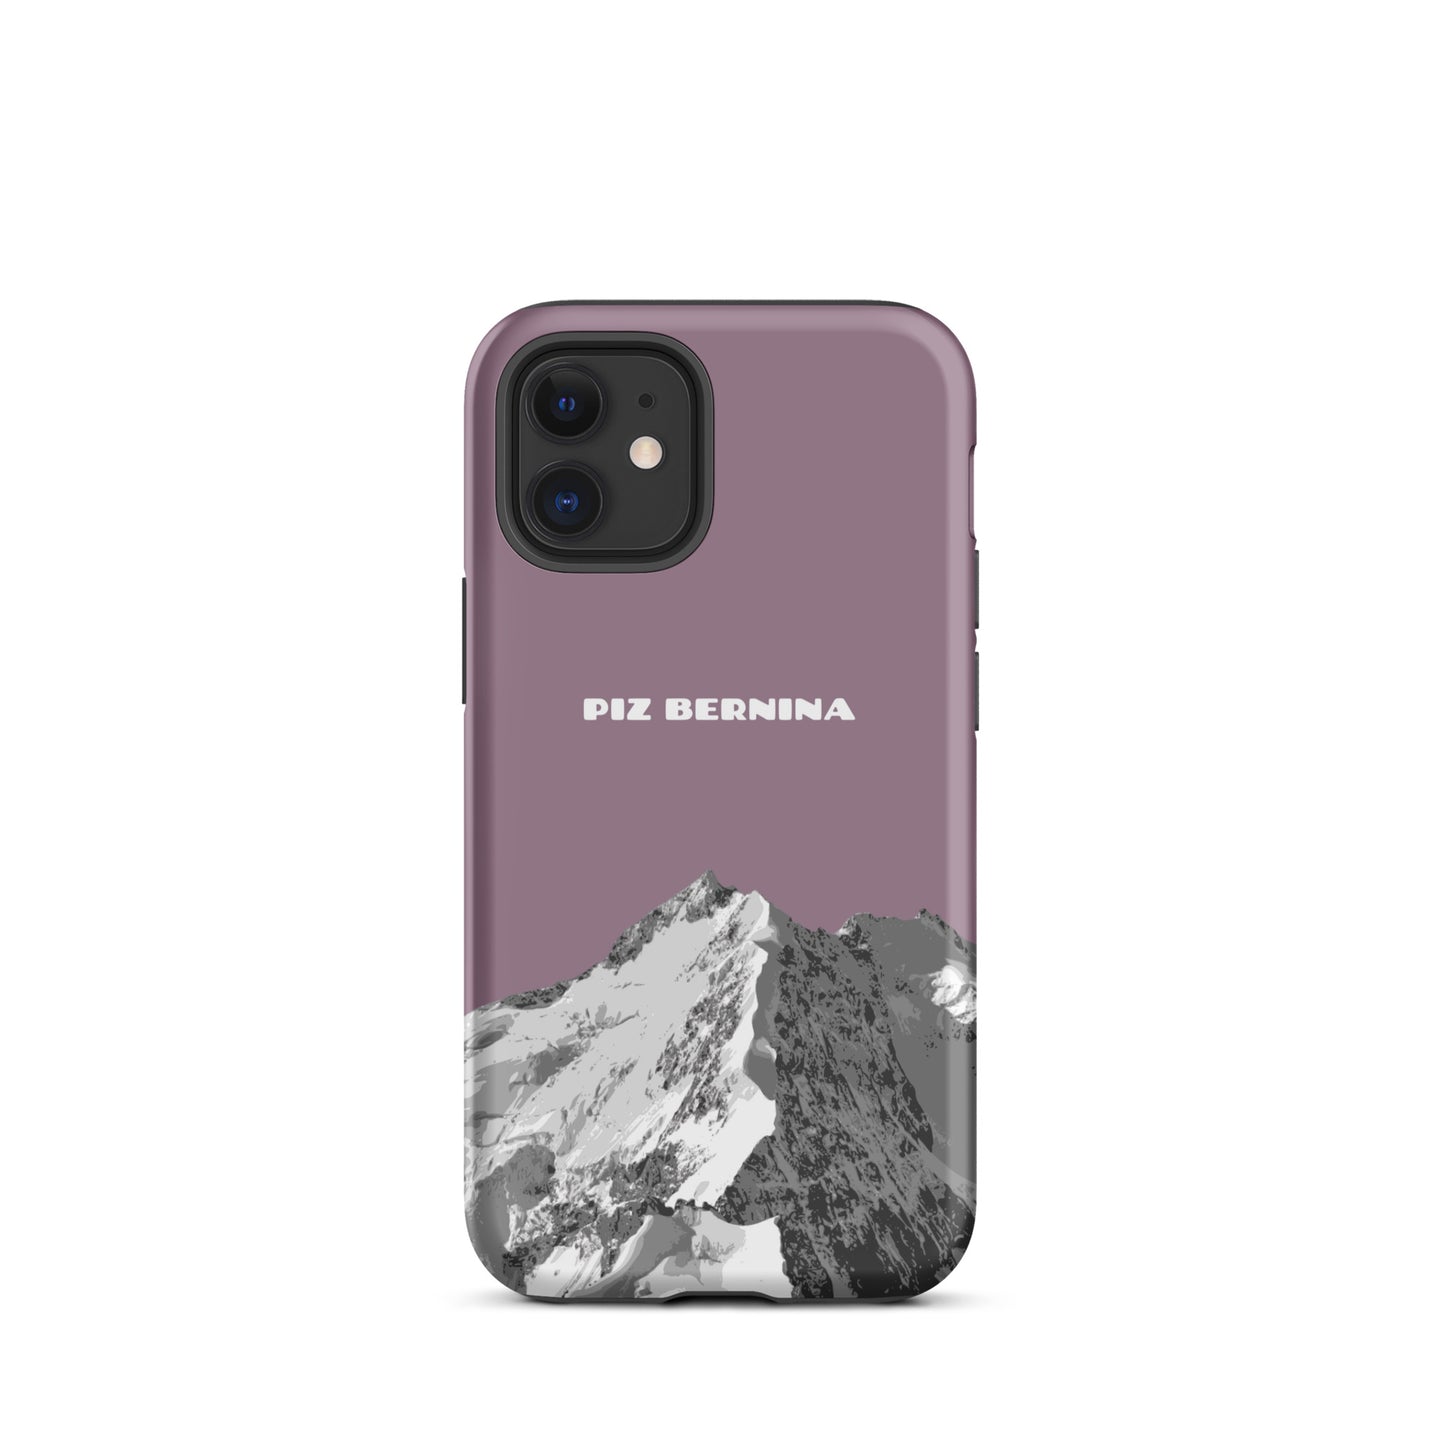 Hülle für das iPhone 12 Mini von Apple in der Farbe Pastellviolett, dass den Piz Bernina in Graubünden zeigt.